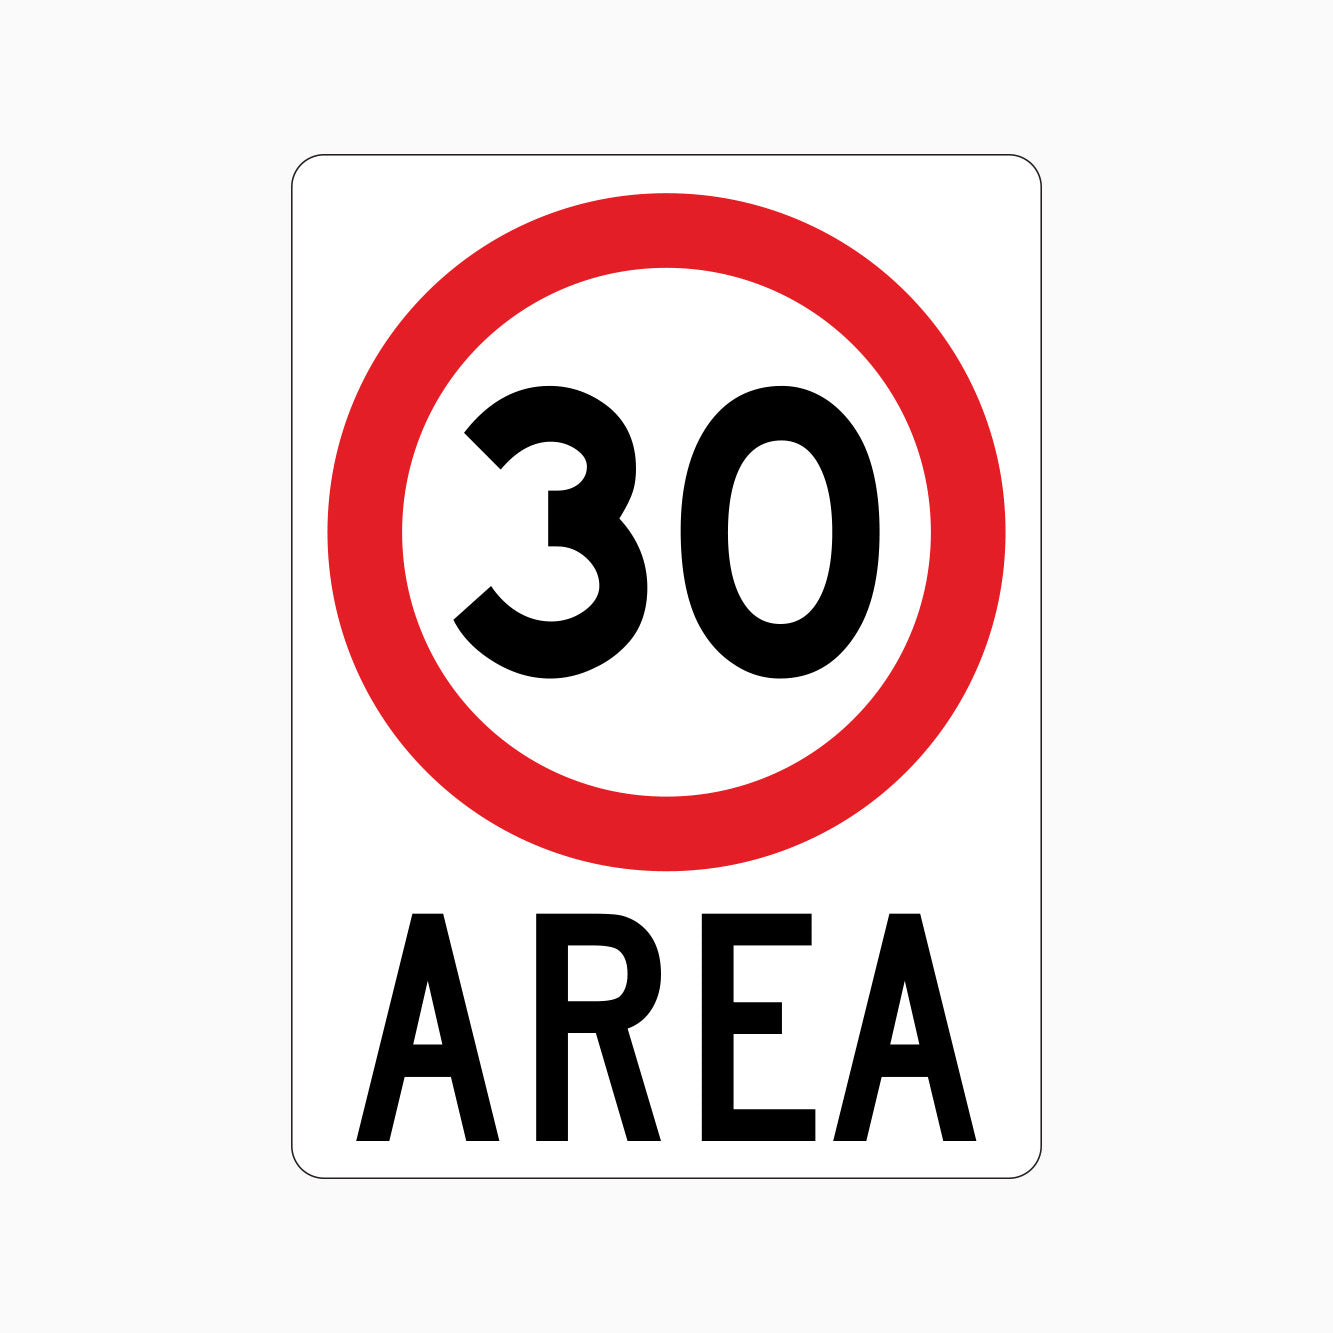 30km AREA SIGN